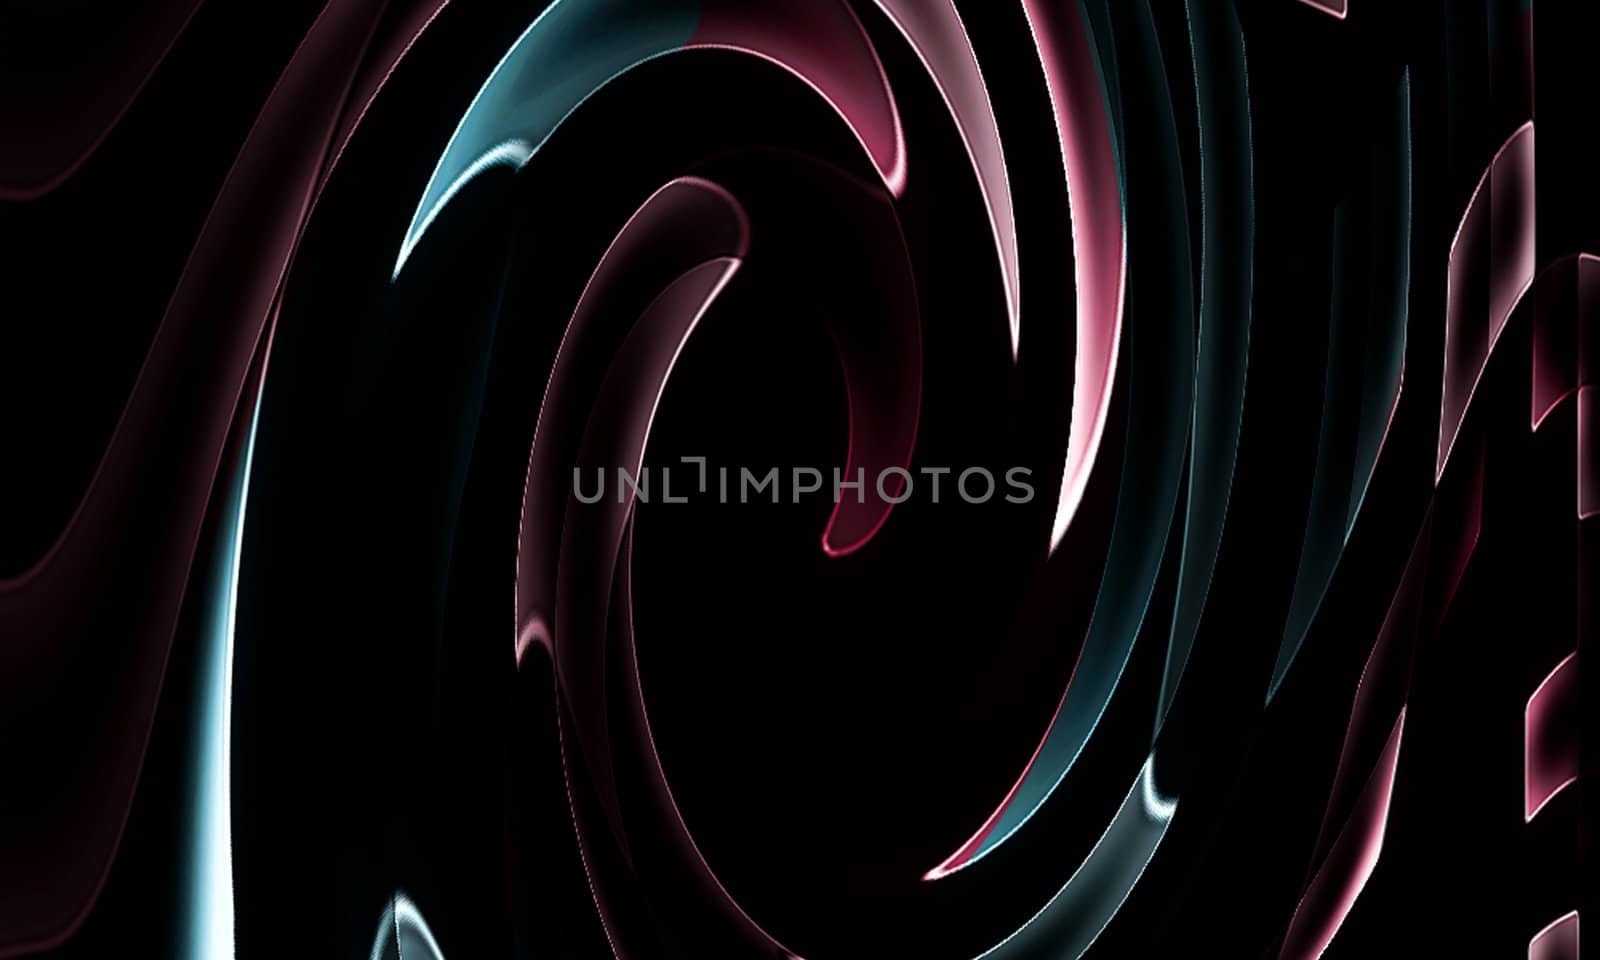 Colorful rendered fractal design by sfinks